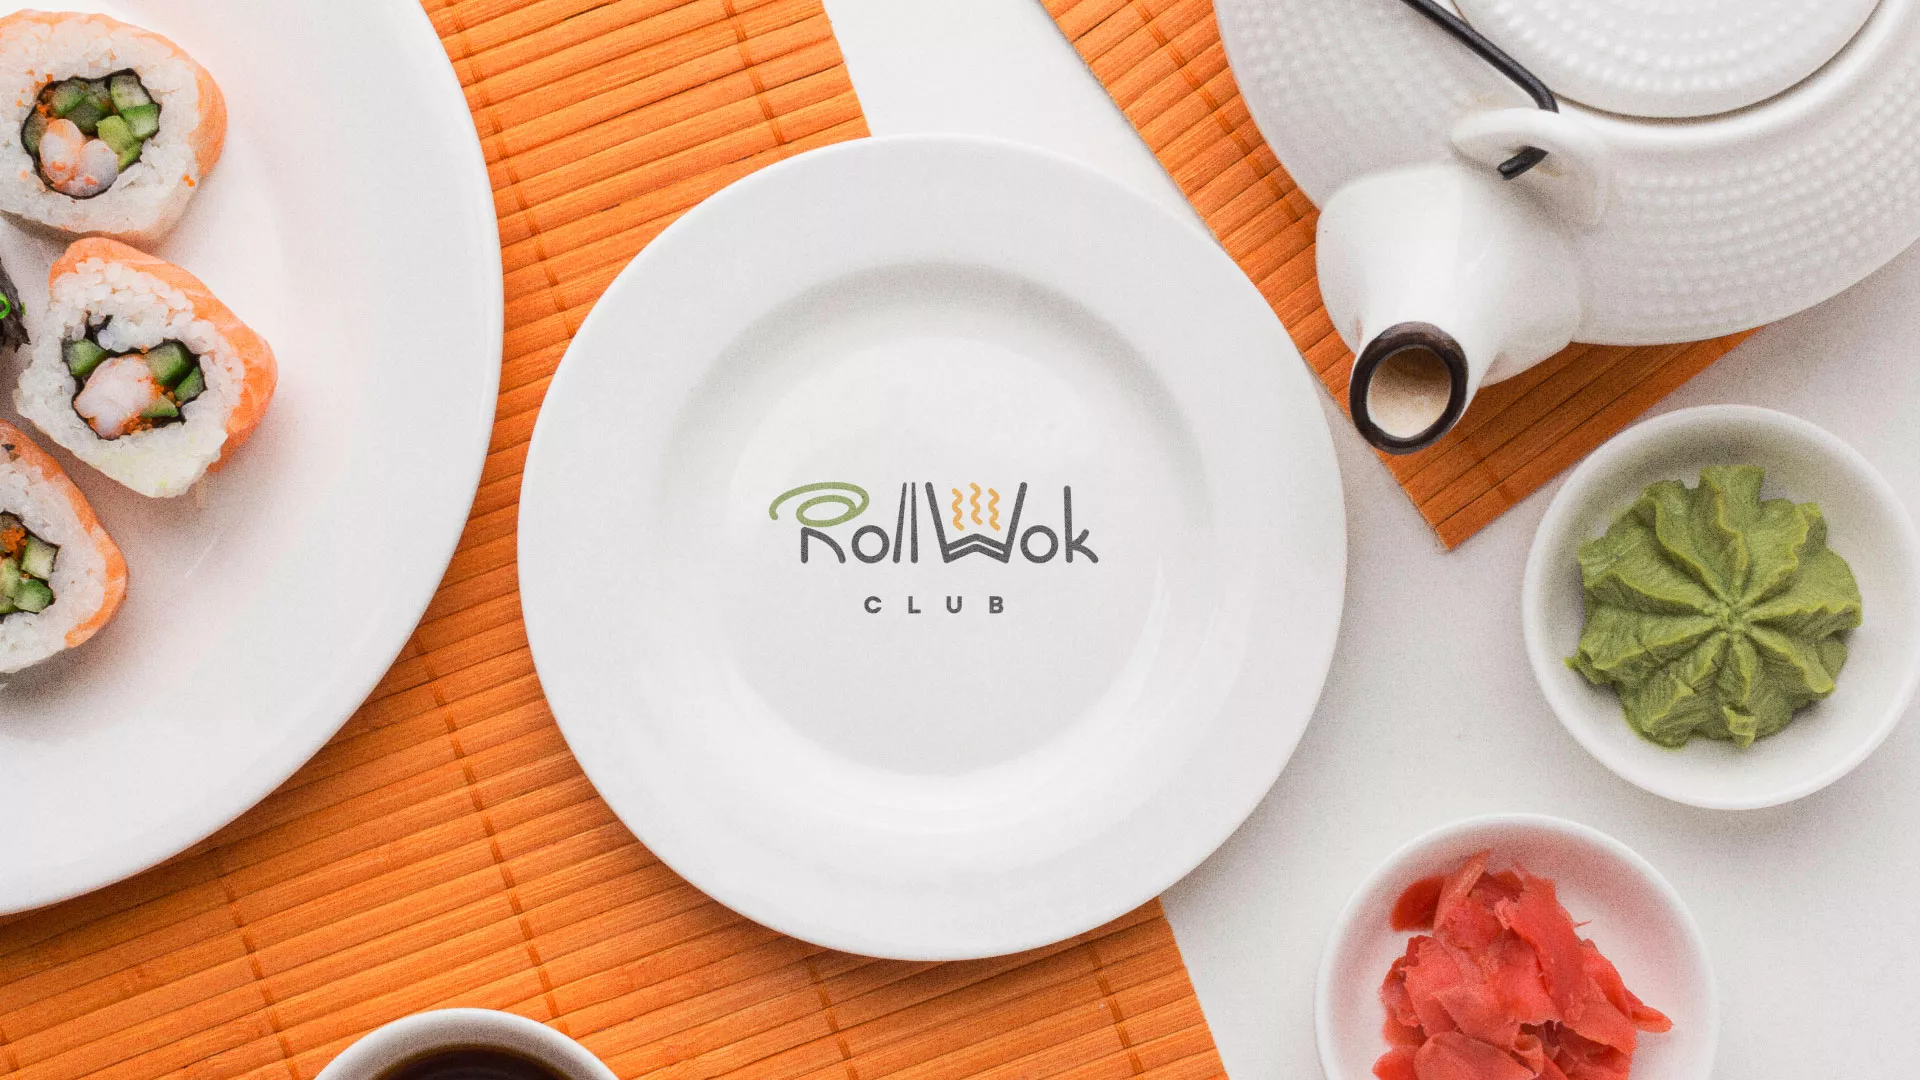 Разработка логотипа и фирменного стиля суши-бара «Roll Wok Club» в Георгиевске